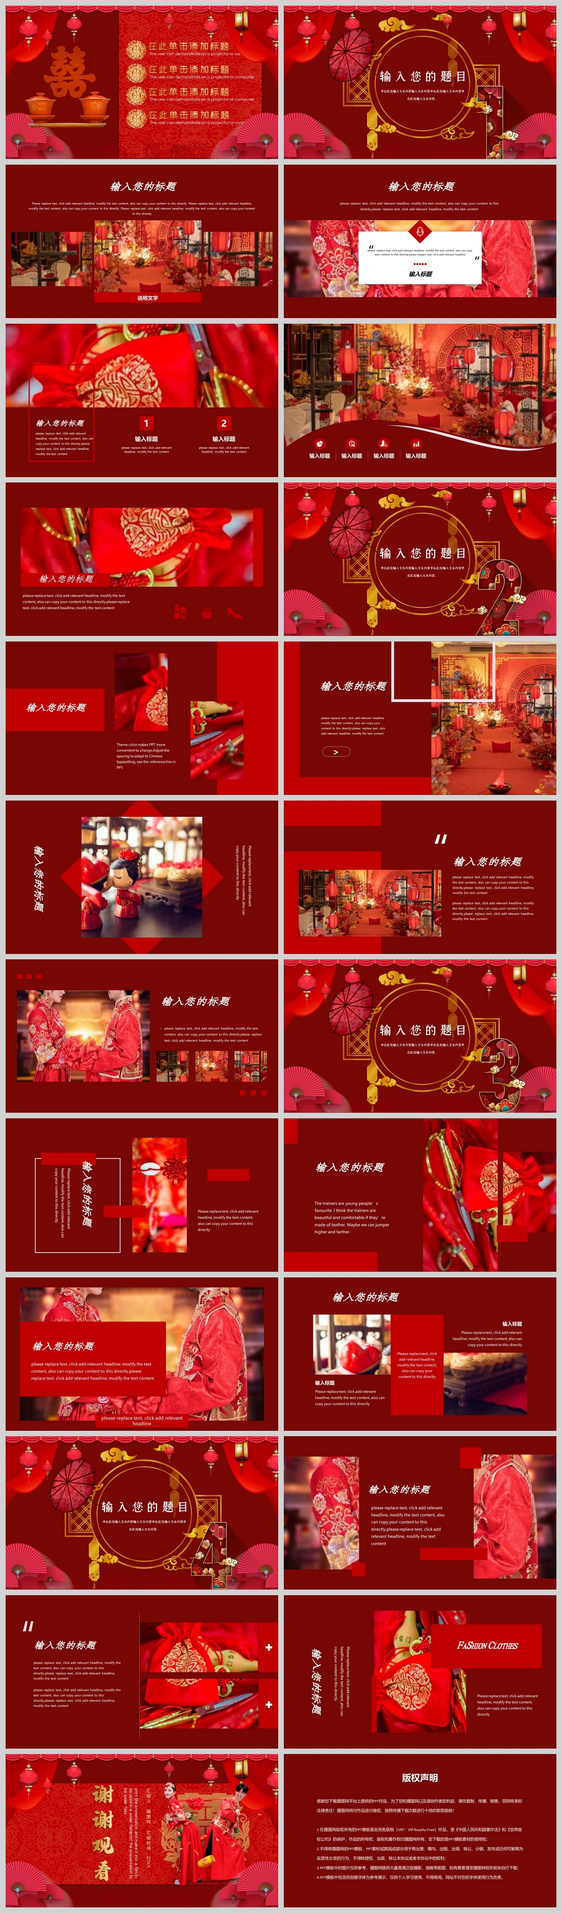 红色喜庆中式婚礼PPT模板